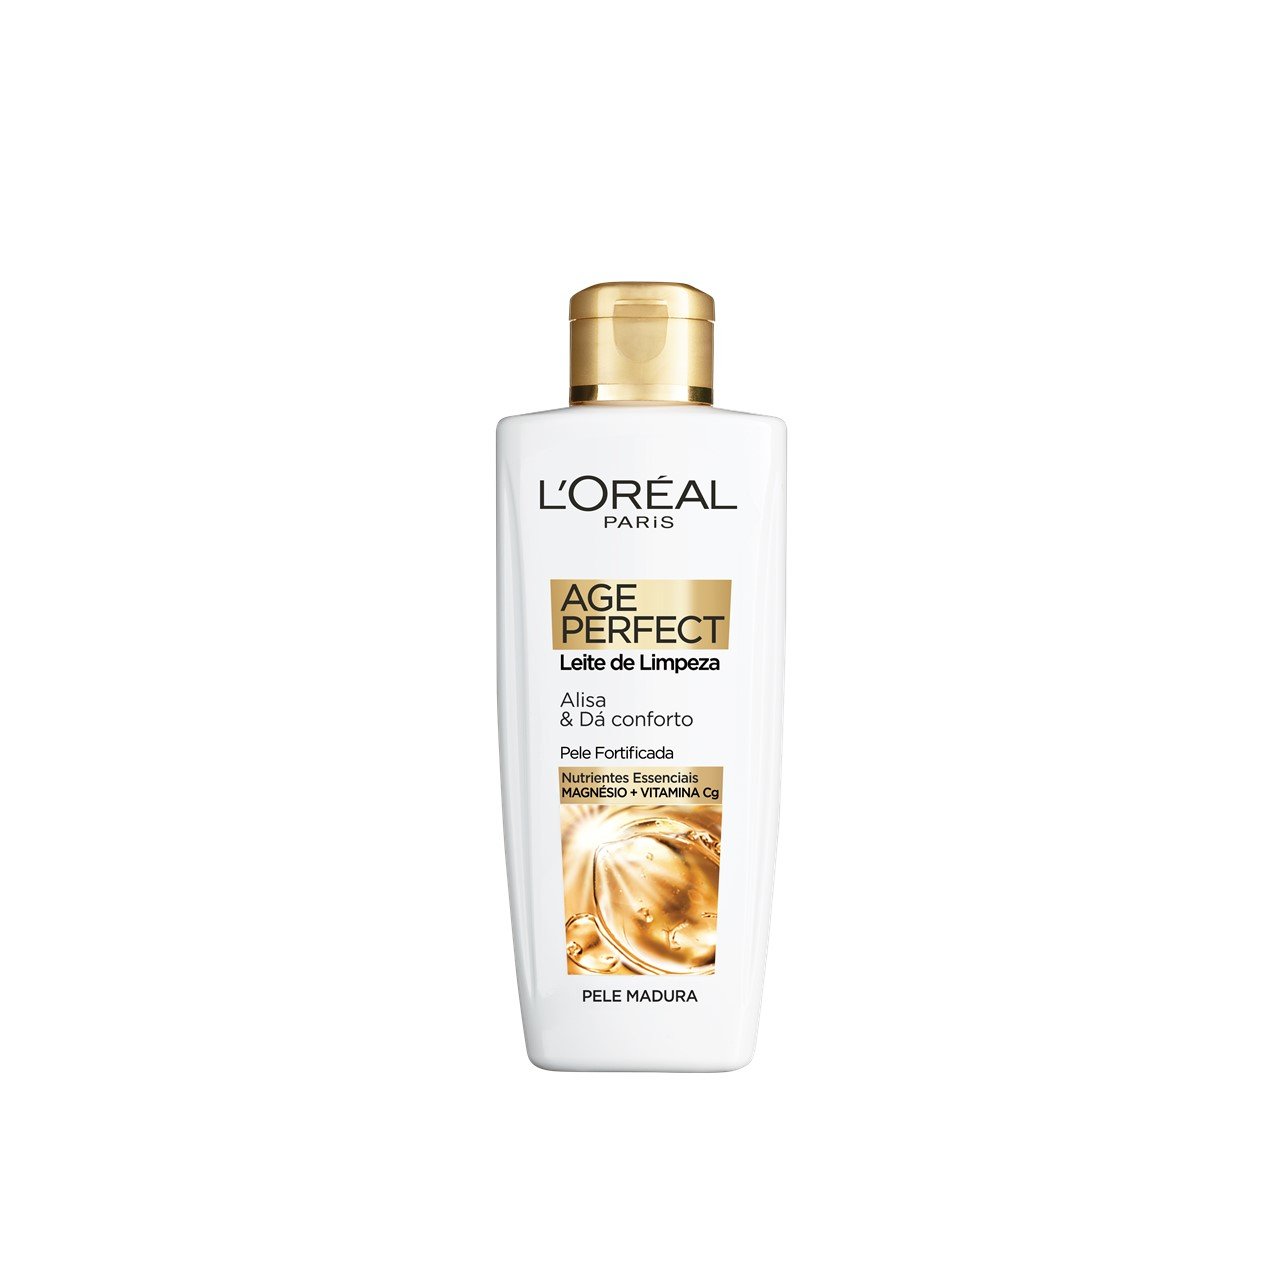 L'Oréal Paris Age Perfect Classic Facial Cleansing Milk 200ml (6.76fl oz)